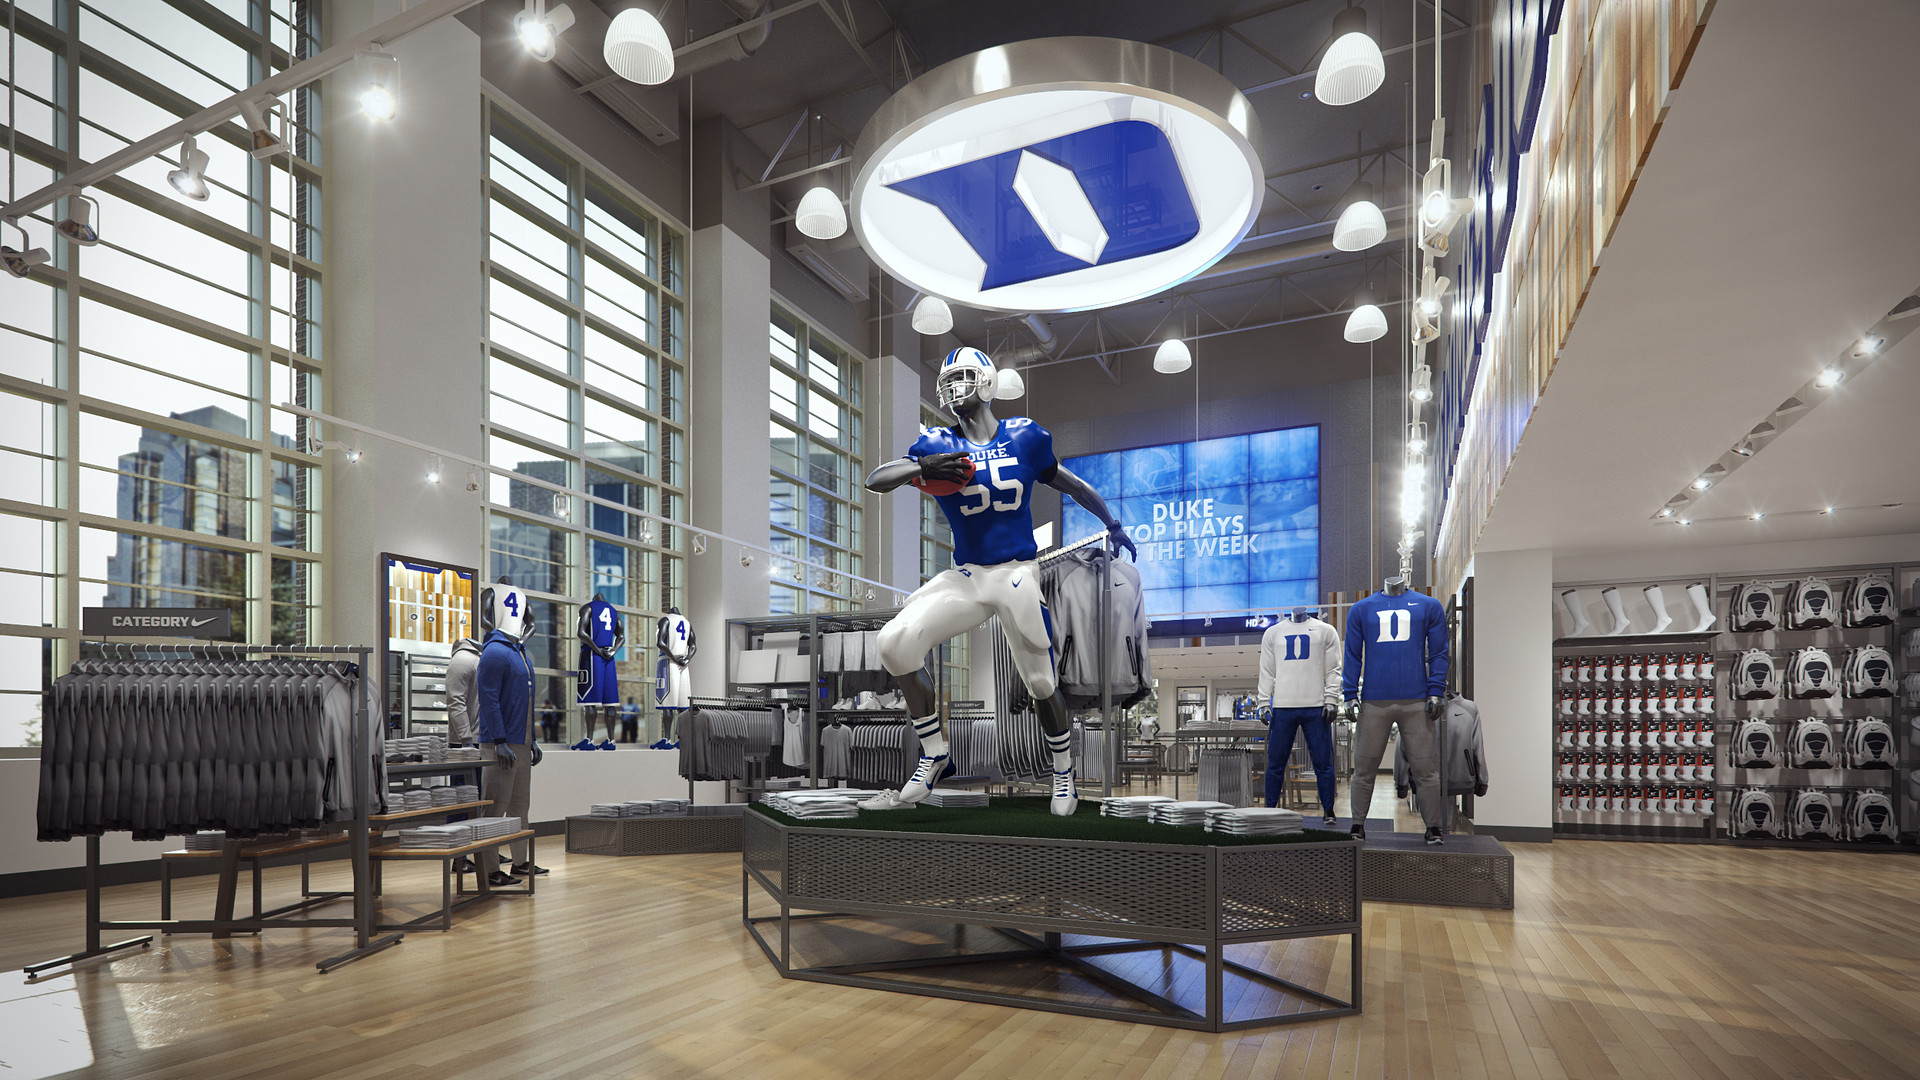 Duke University Nike Store, Matthew Wolf